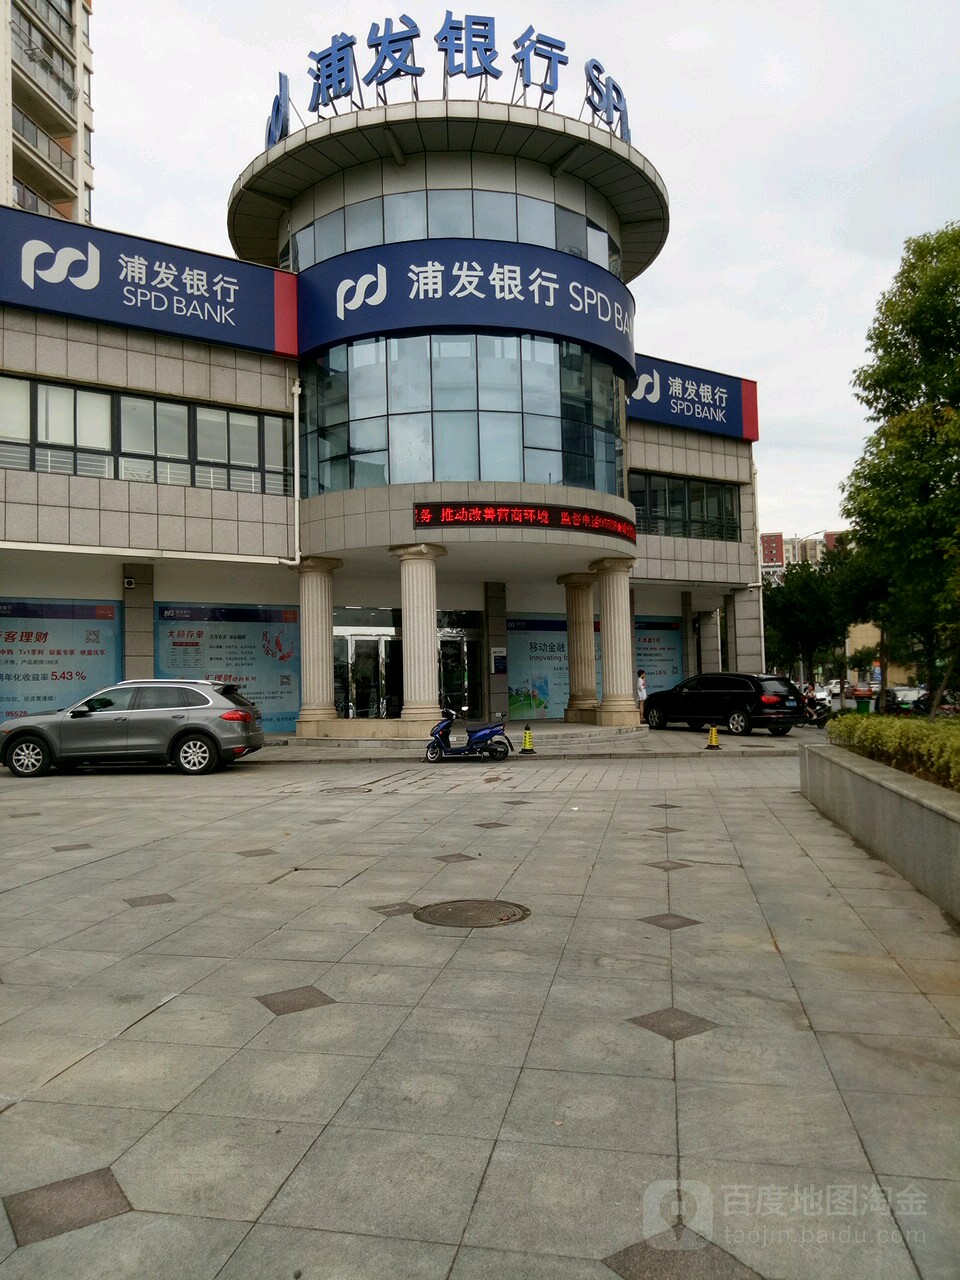 上海浦東發展銀行(蕪湖縣支行)